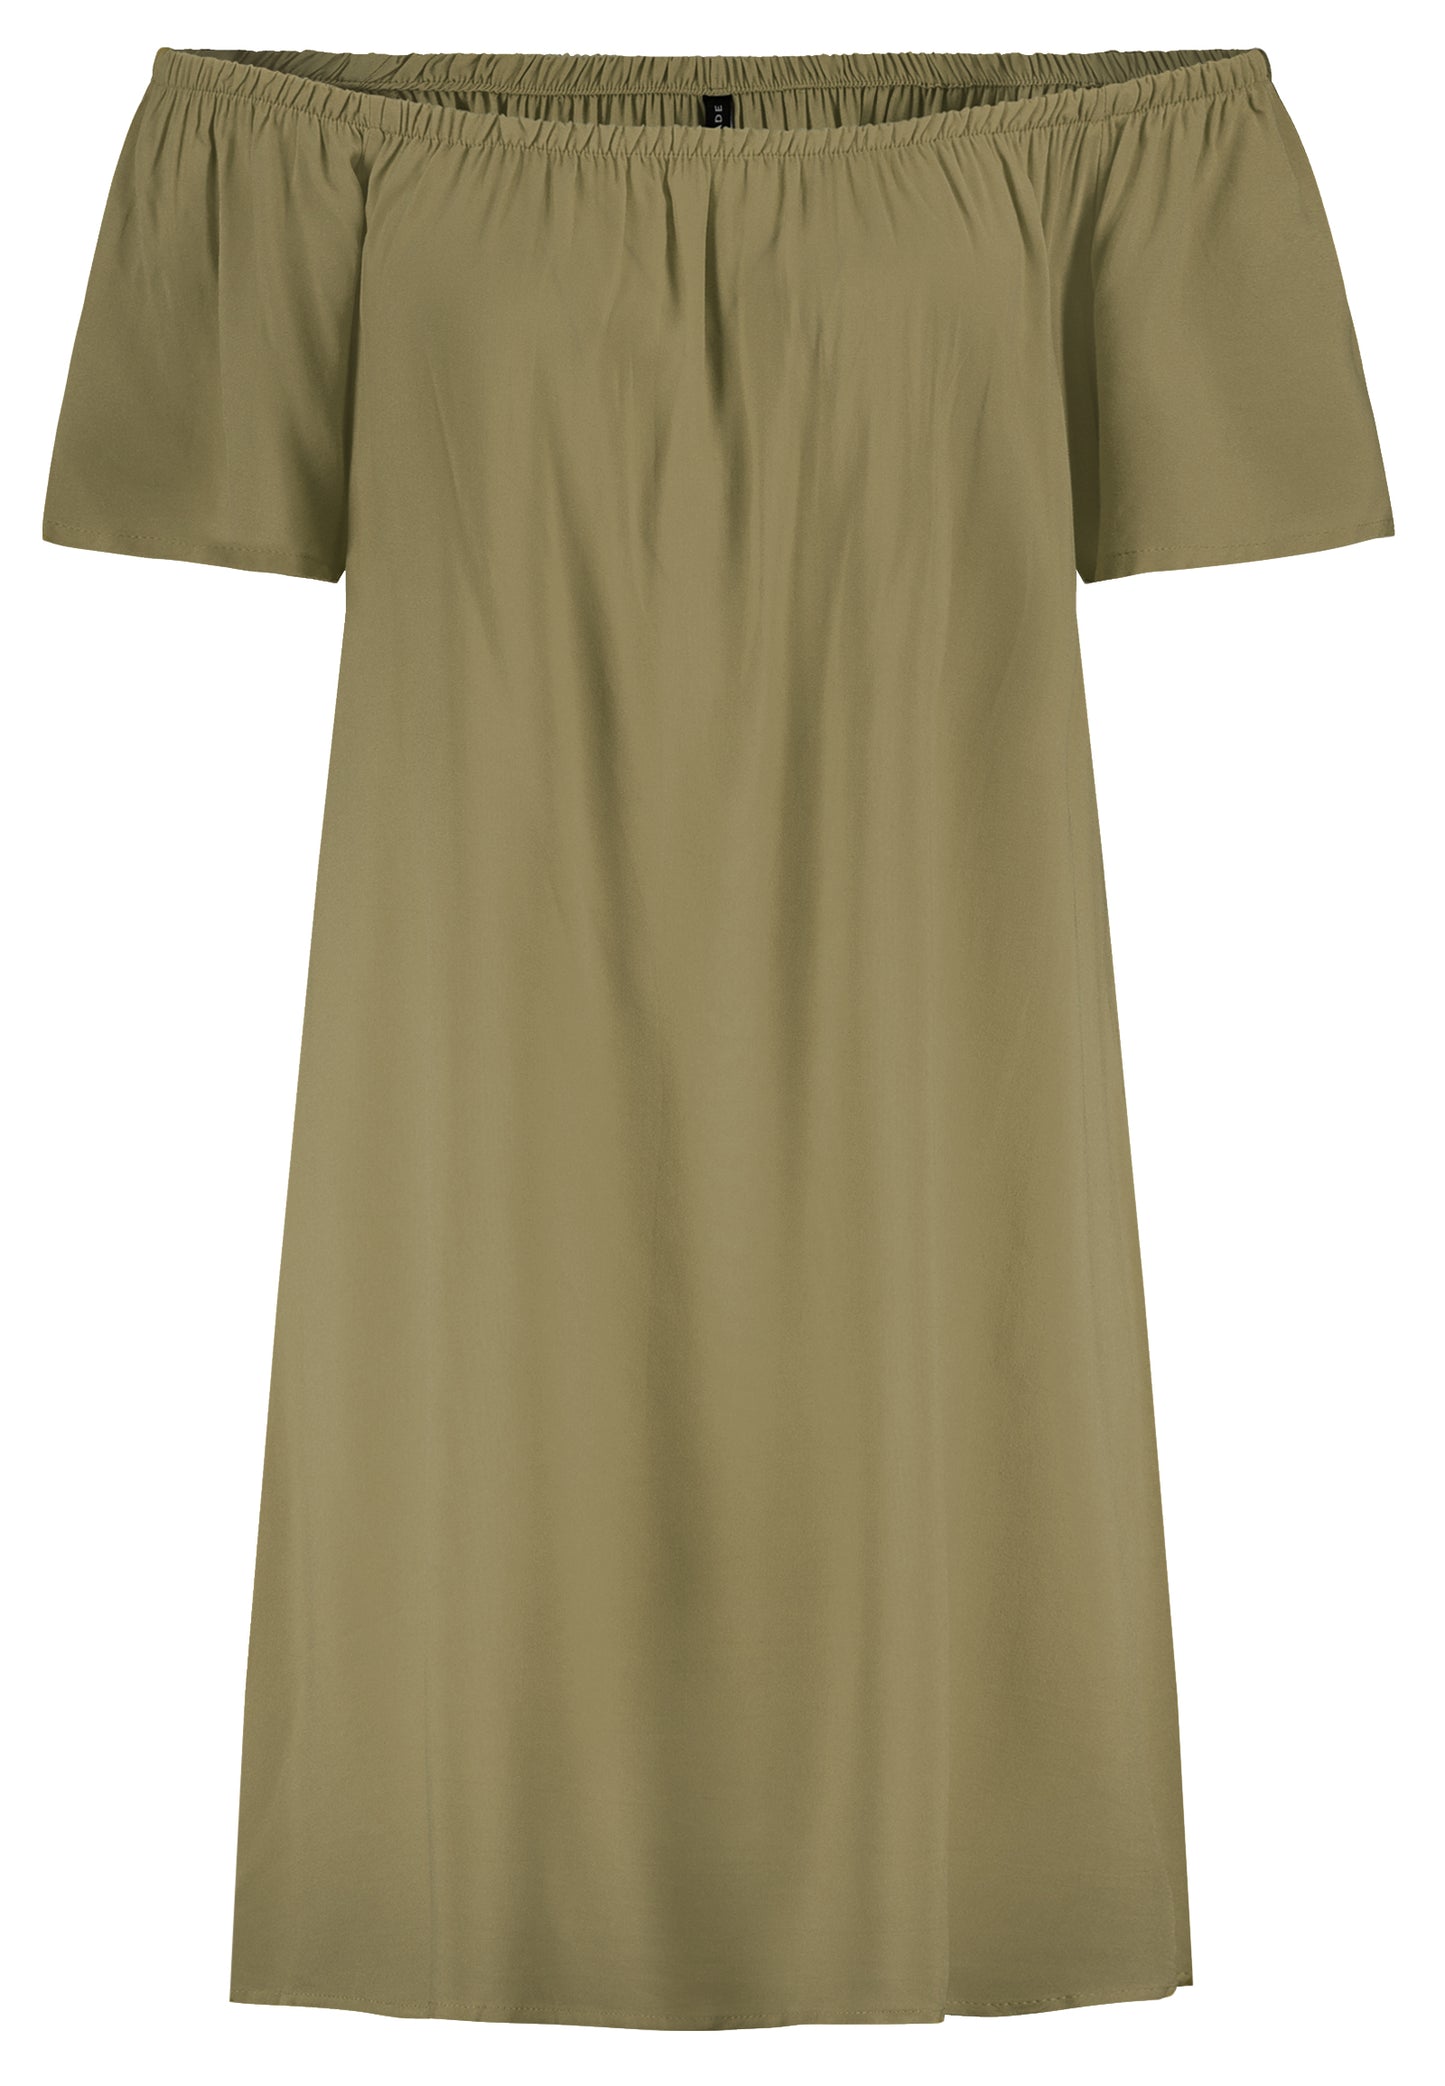 Kleid, Carmen-Ausschnitt mit Gummizug, kurze Ärmel